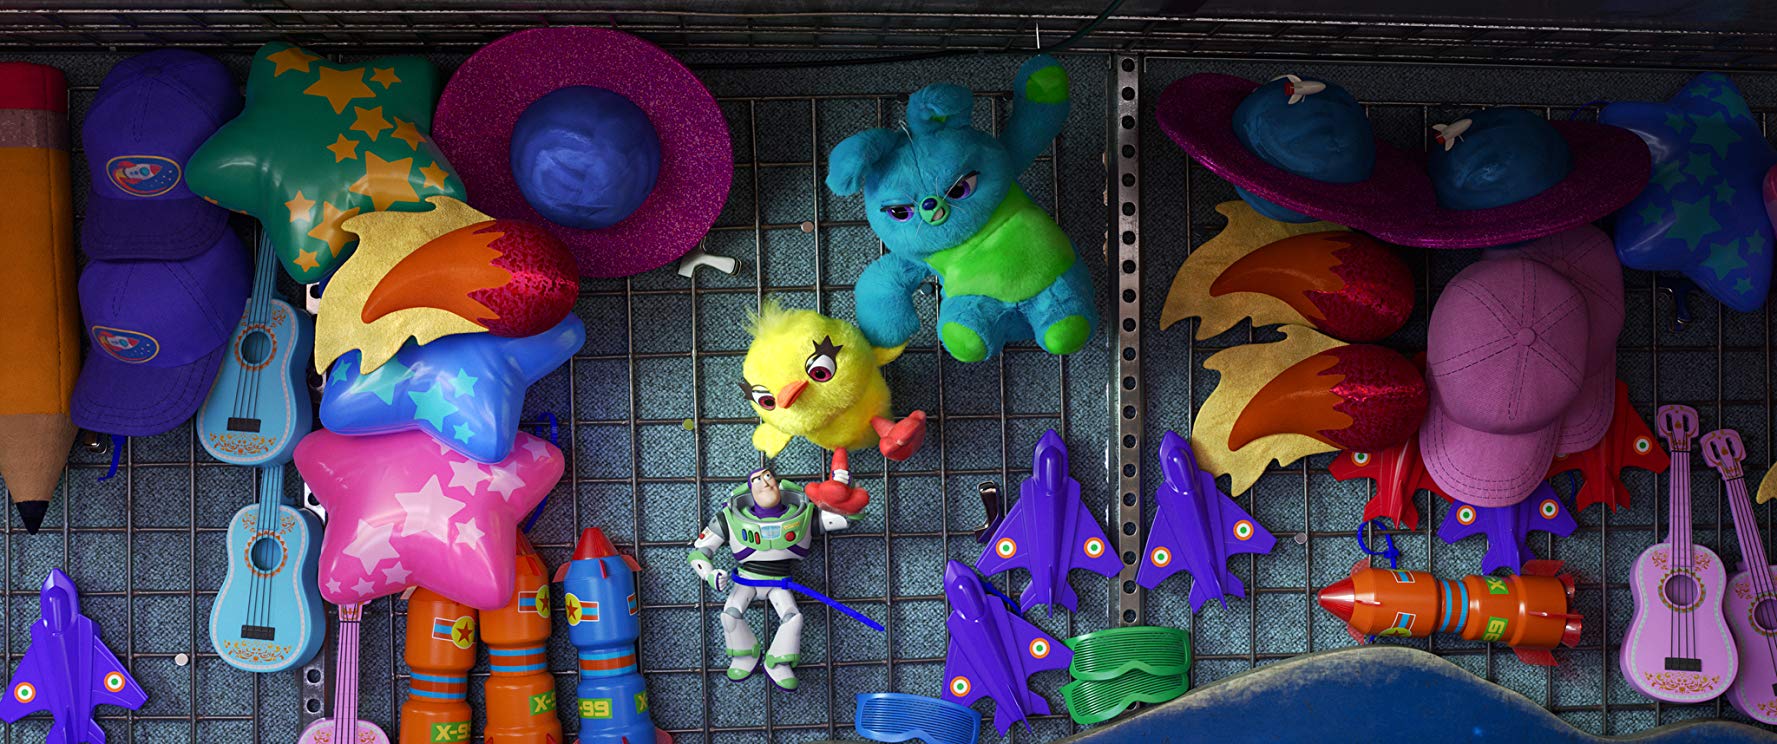 Kino sensoryczne: Toy Story 4